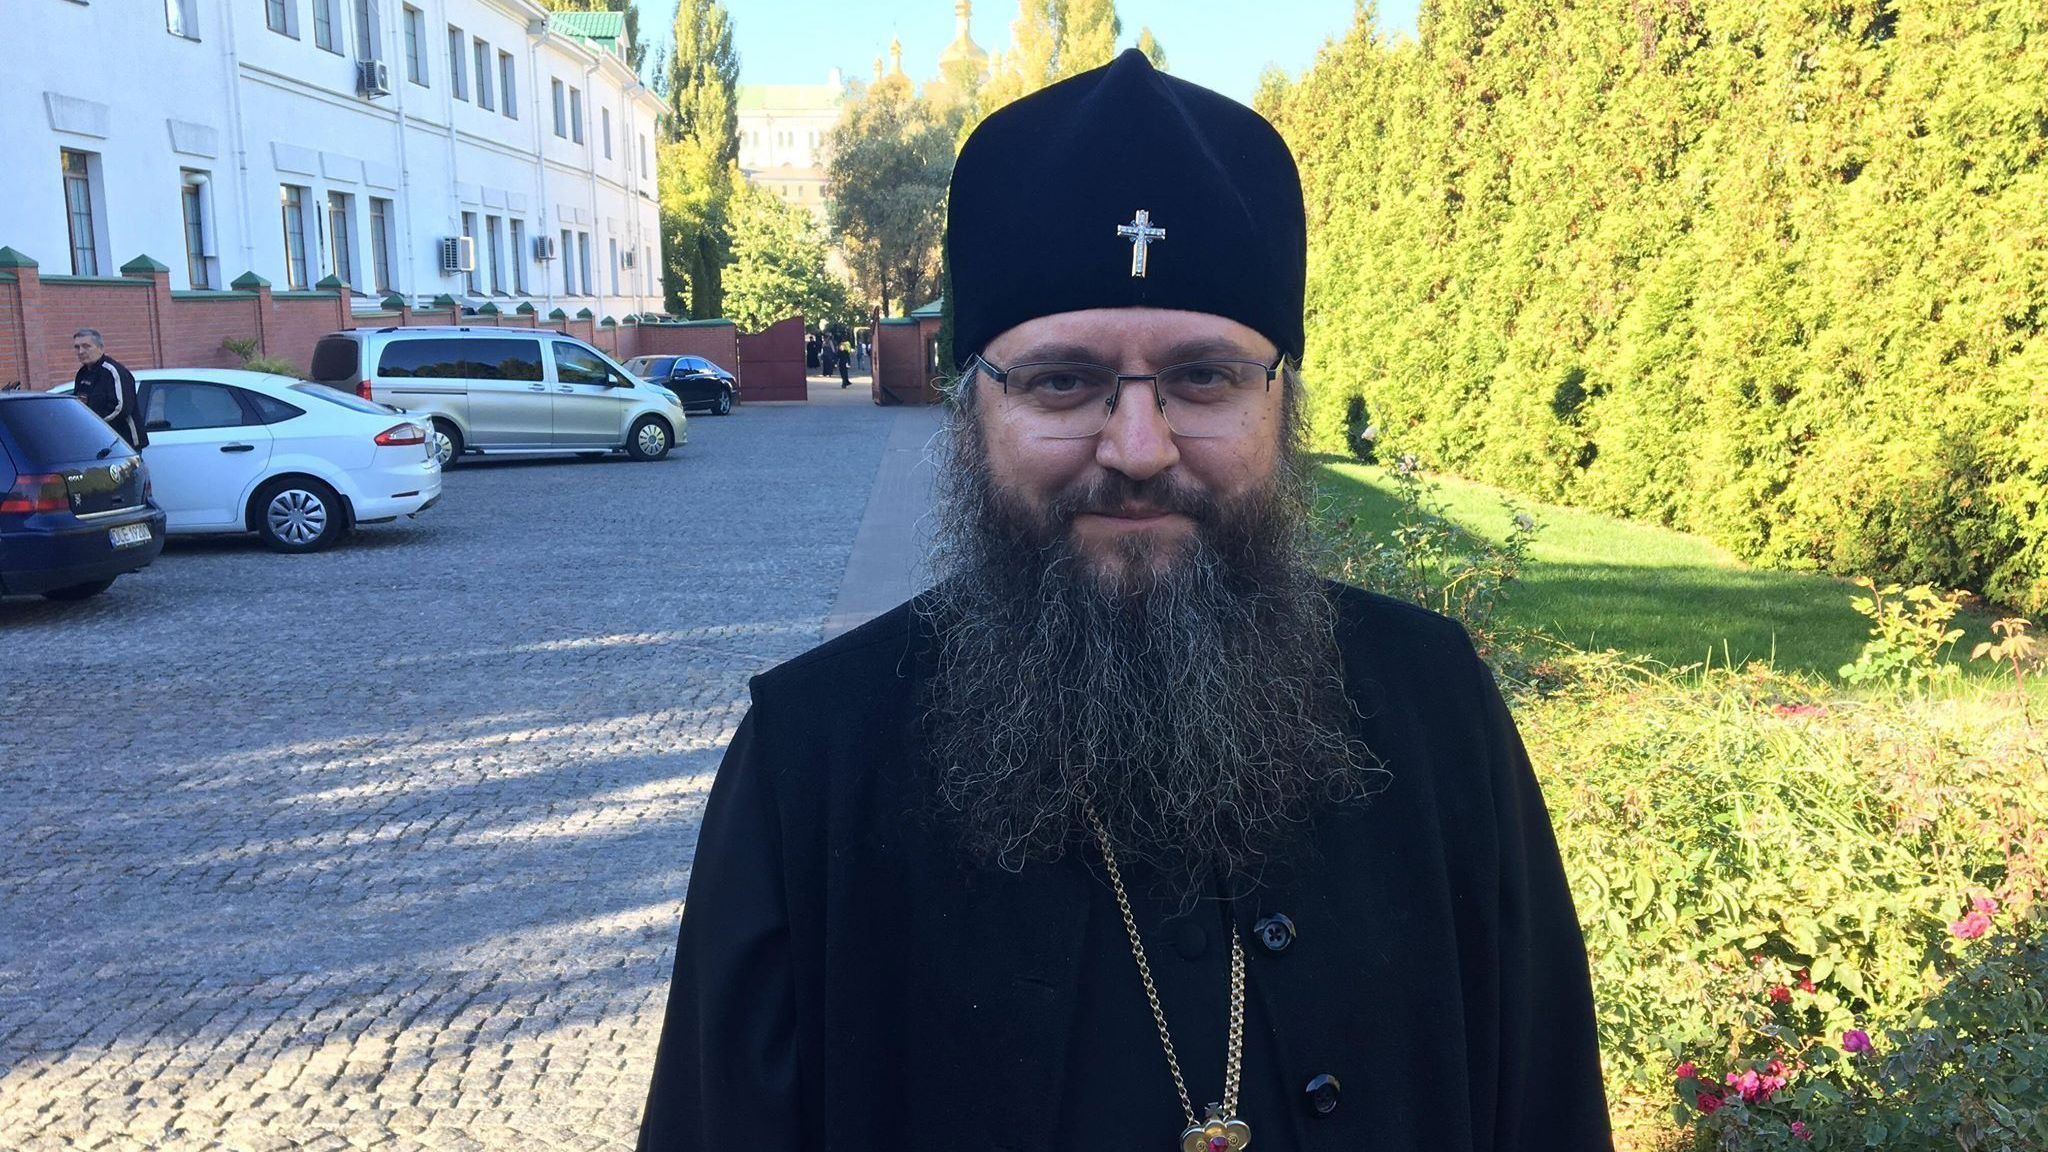 Що означає рішення Синоду РПЦ щодо Томосу для України: пояснення Московського патріархату 